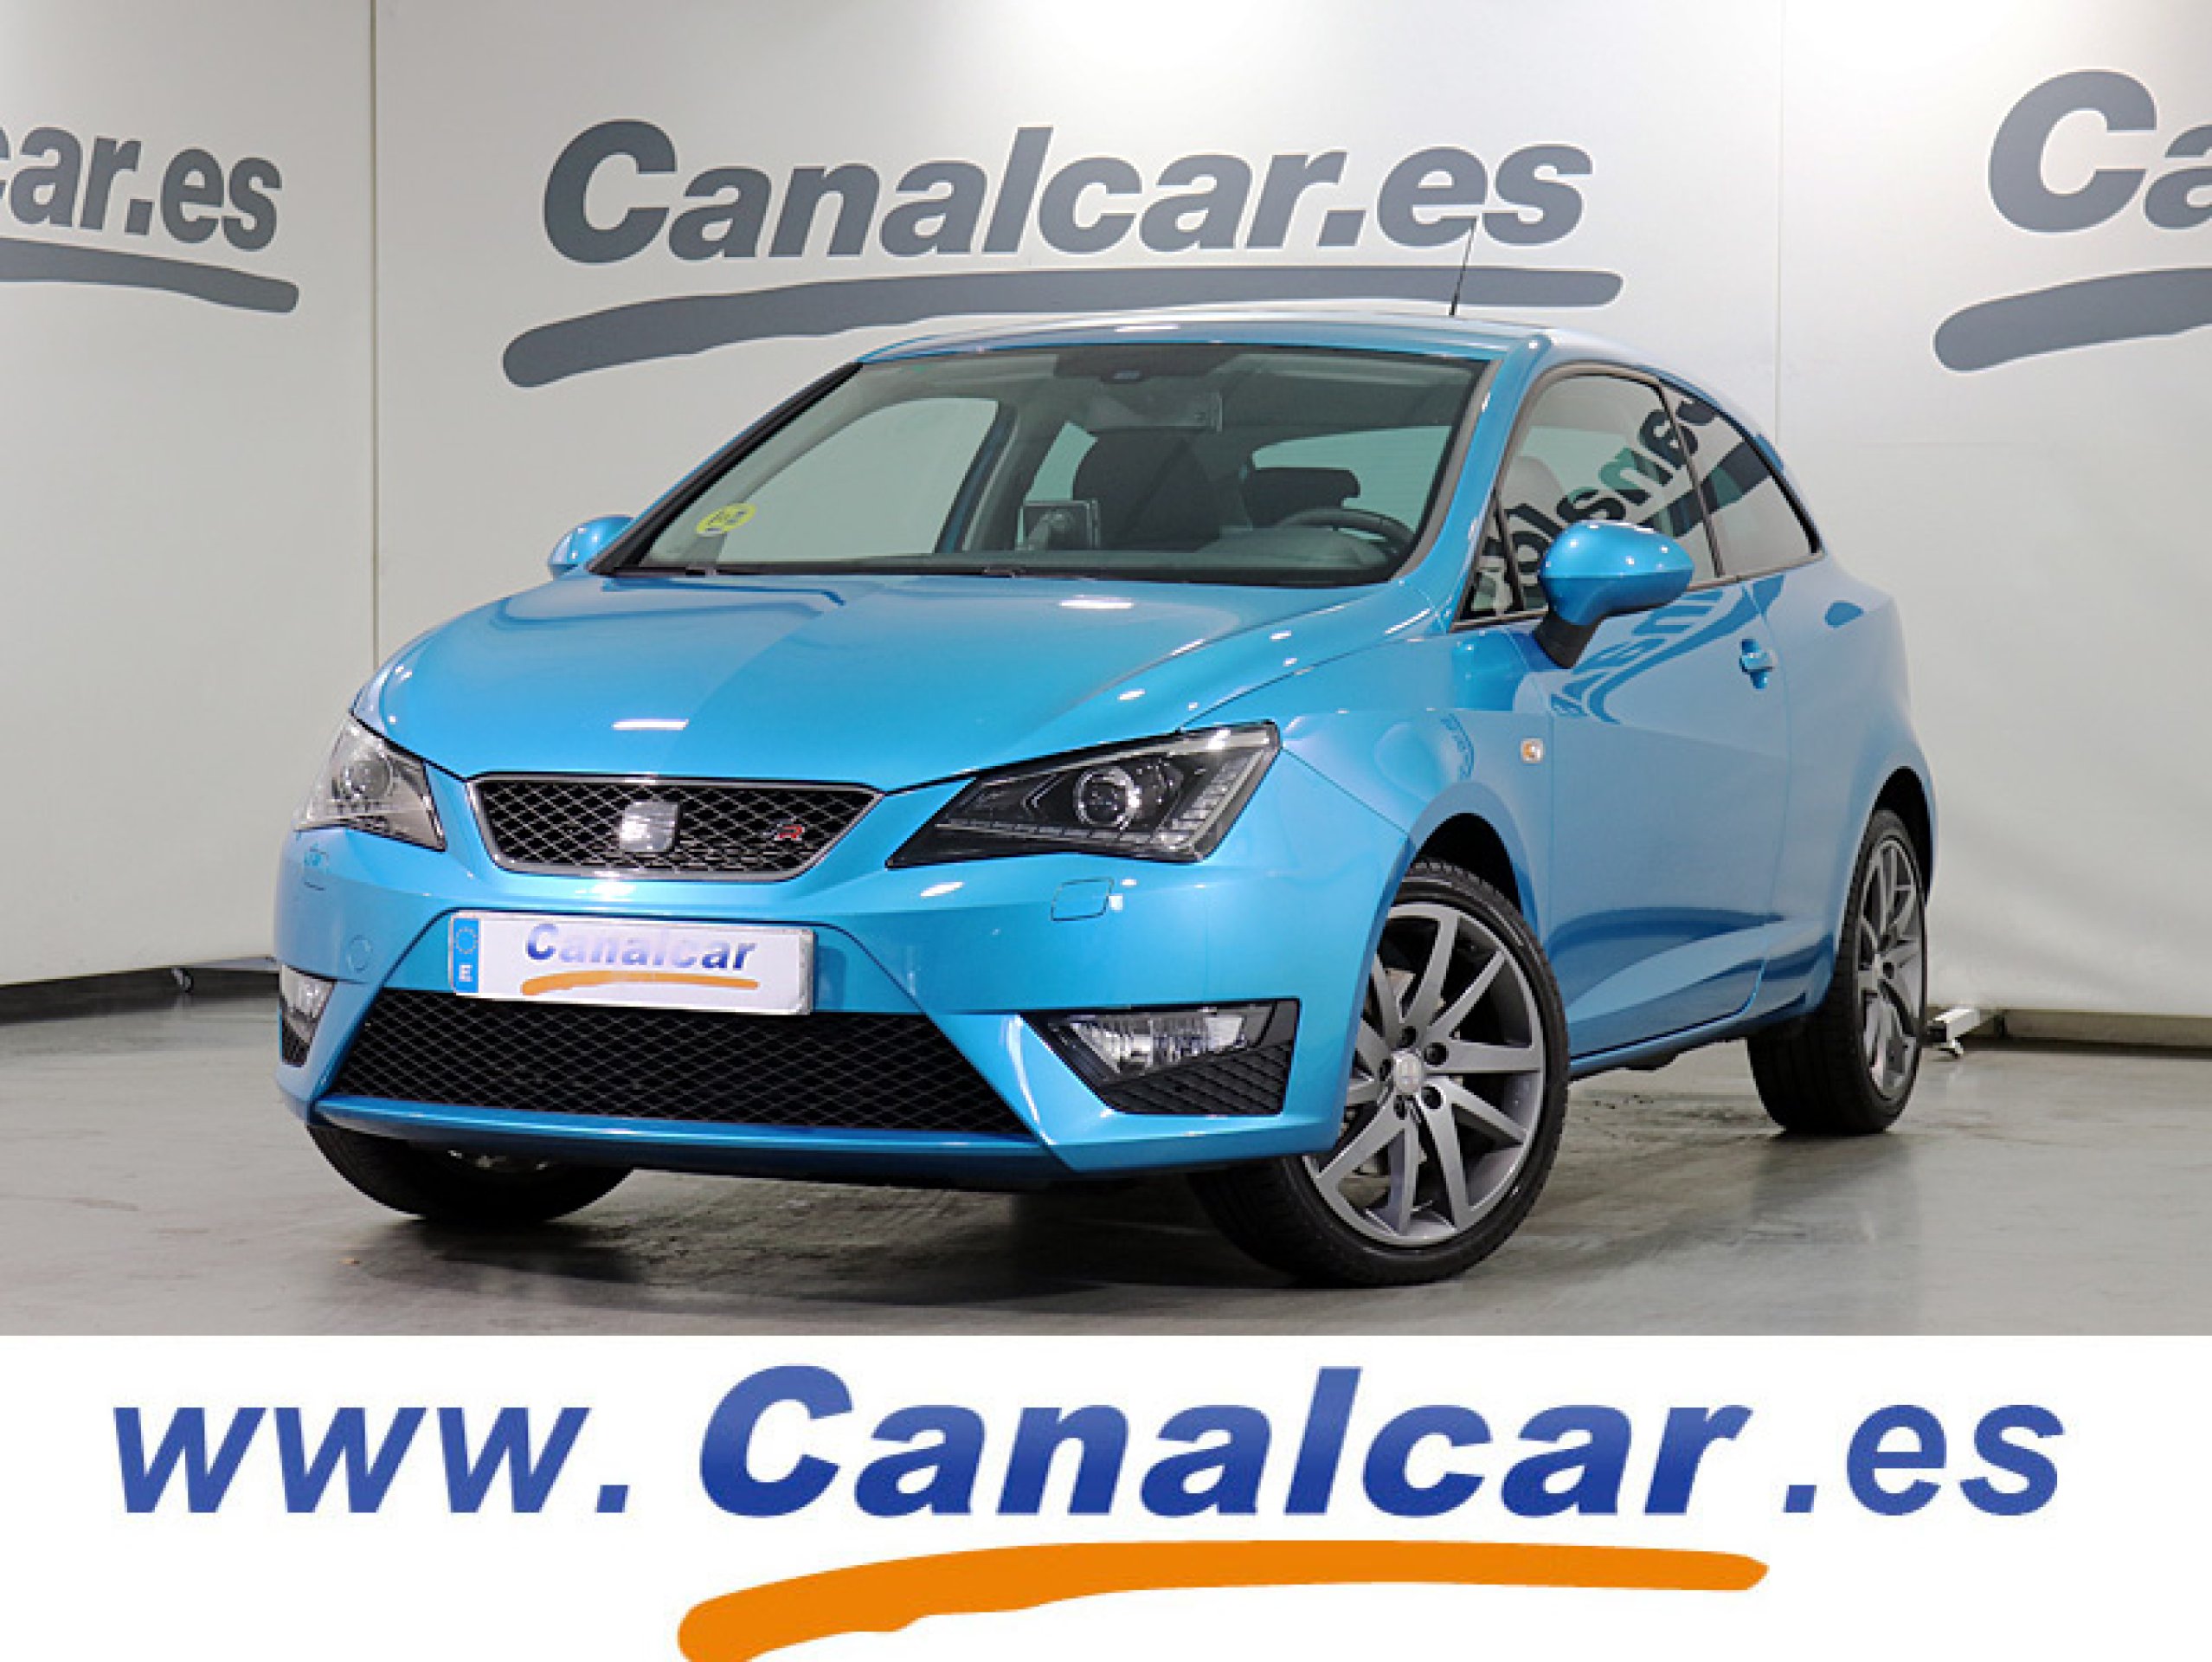 Oferta de SEAT Ibiza SC 2.0 TDI FR 143CV en Canalcar (12692)